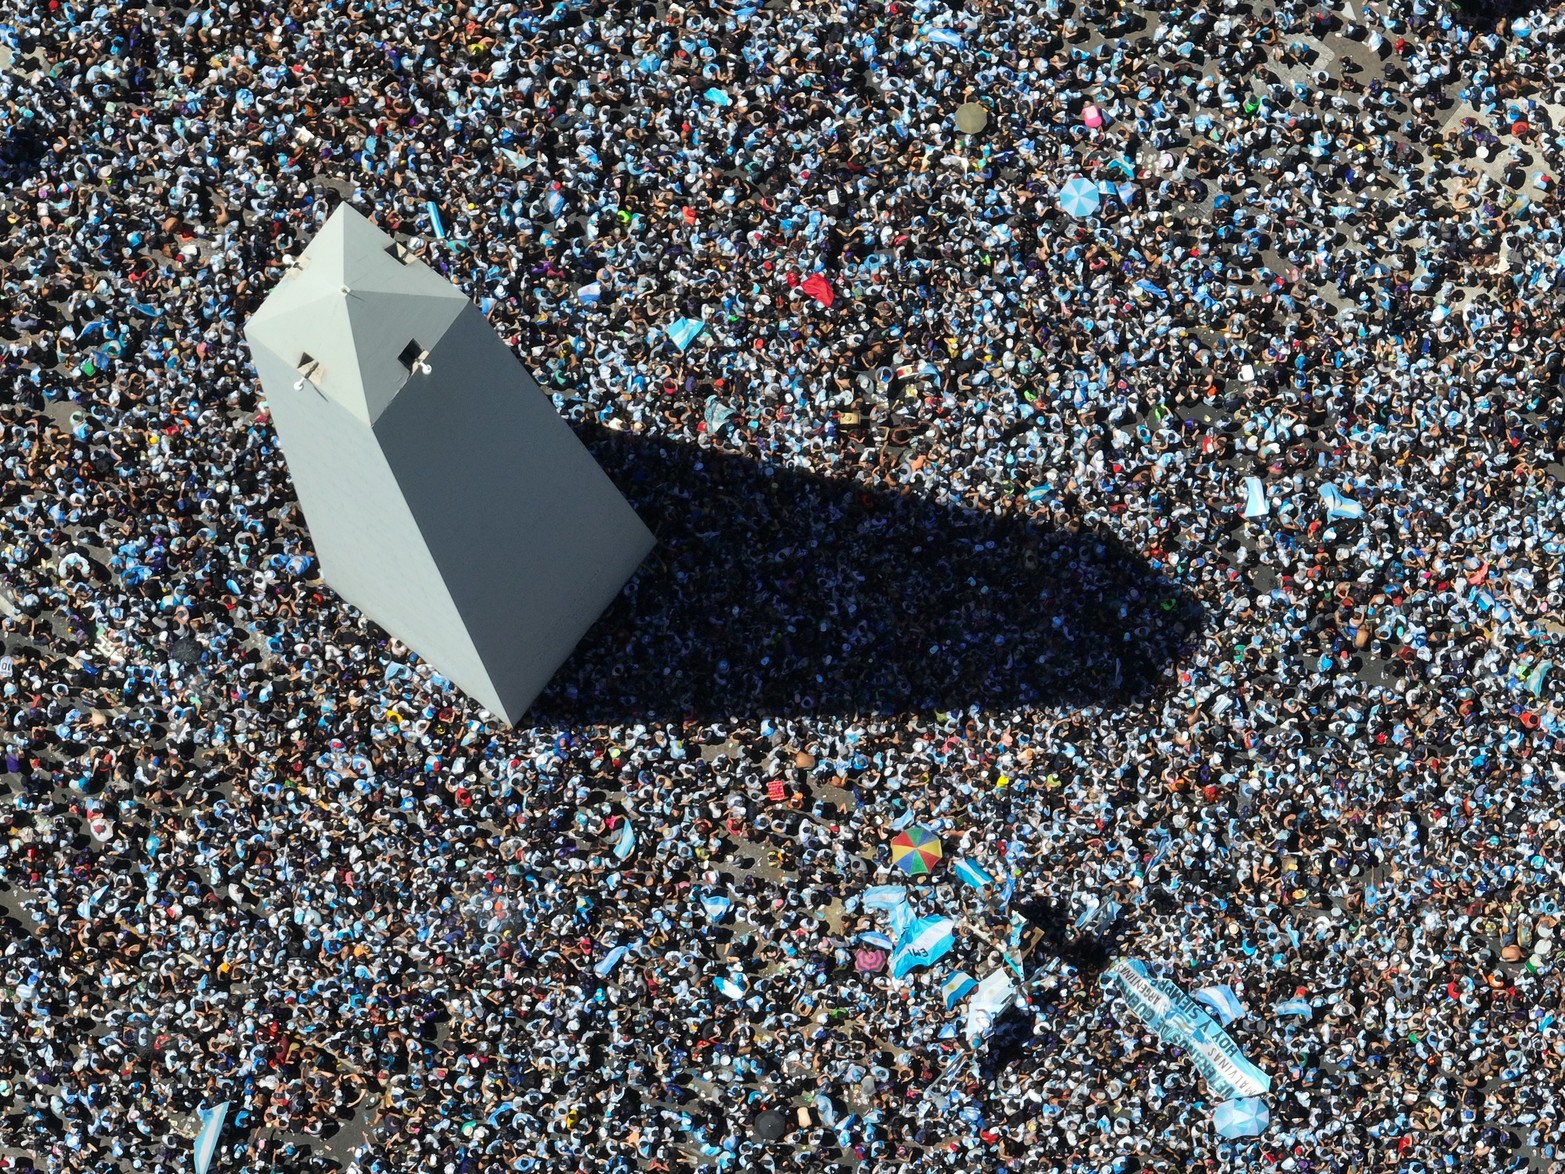 El obelisco quedó rodeado por una marea humana. Se estima que entre 4 y 5 millones de personas se acercaron para intentar ver pasar a los jugadores en el colectivo. Fue imposible.